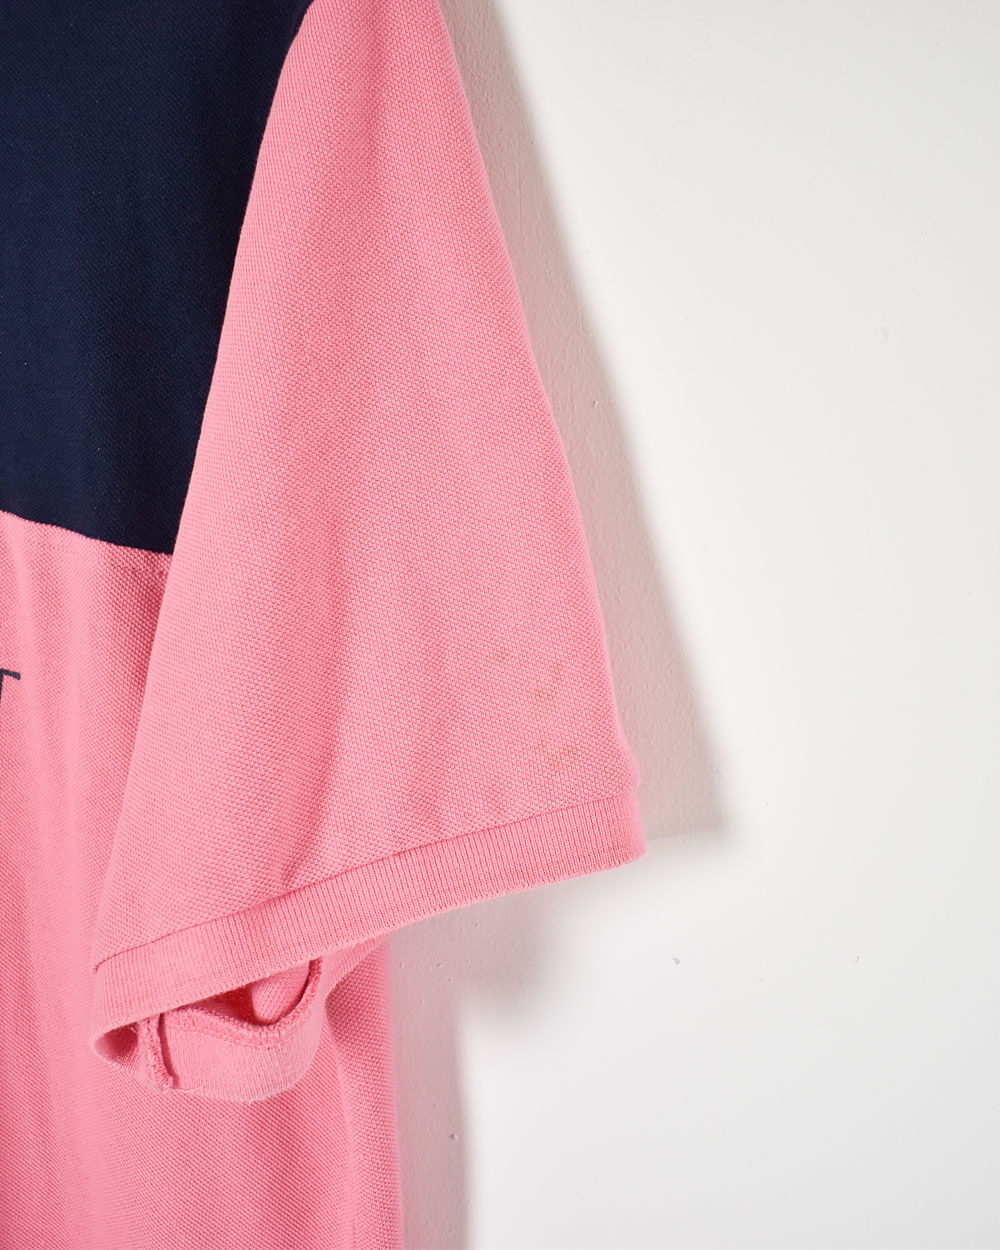 Pink Yves Saint Laurent Pour Bomme Polo Shirt - Medium